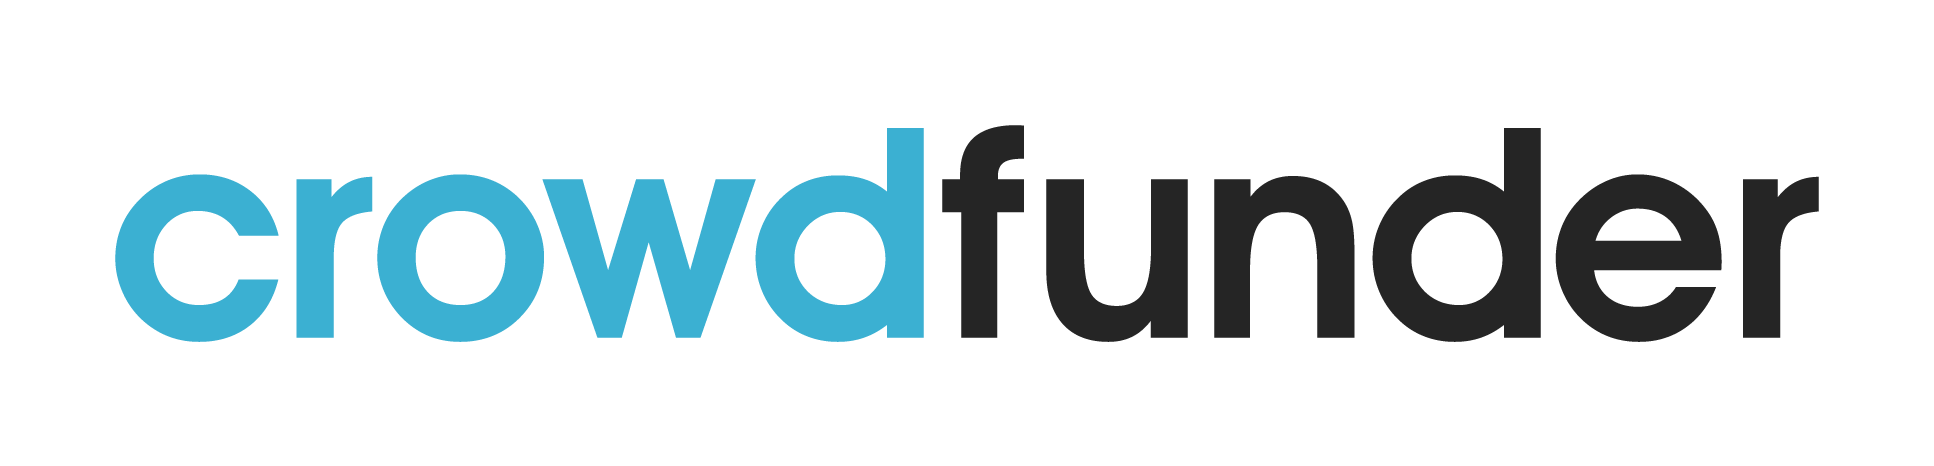 CrowdFunder logo